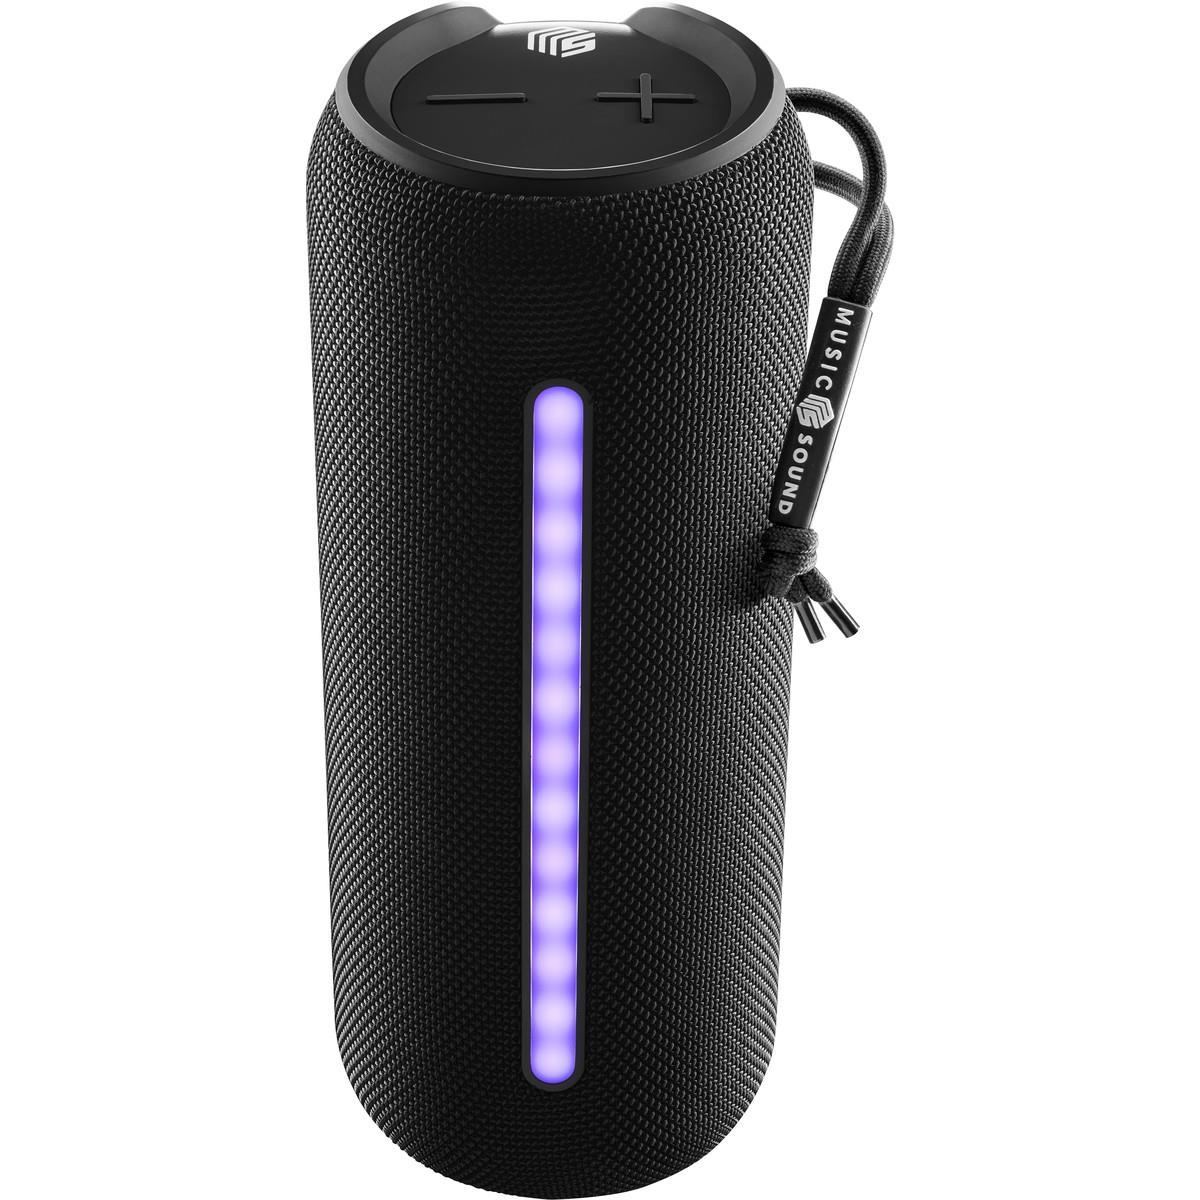 Spritzwasserfester Lautsprecher HYPE 20 mit LED-Licht für bluetoothfähige Geräte